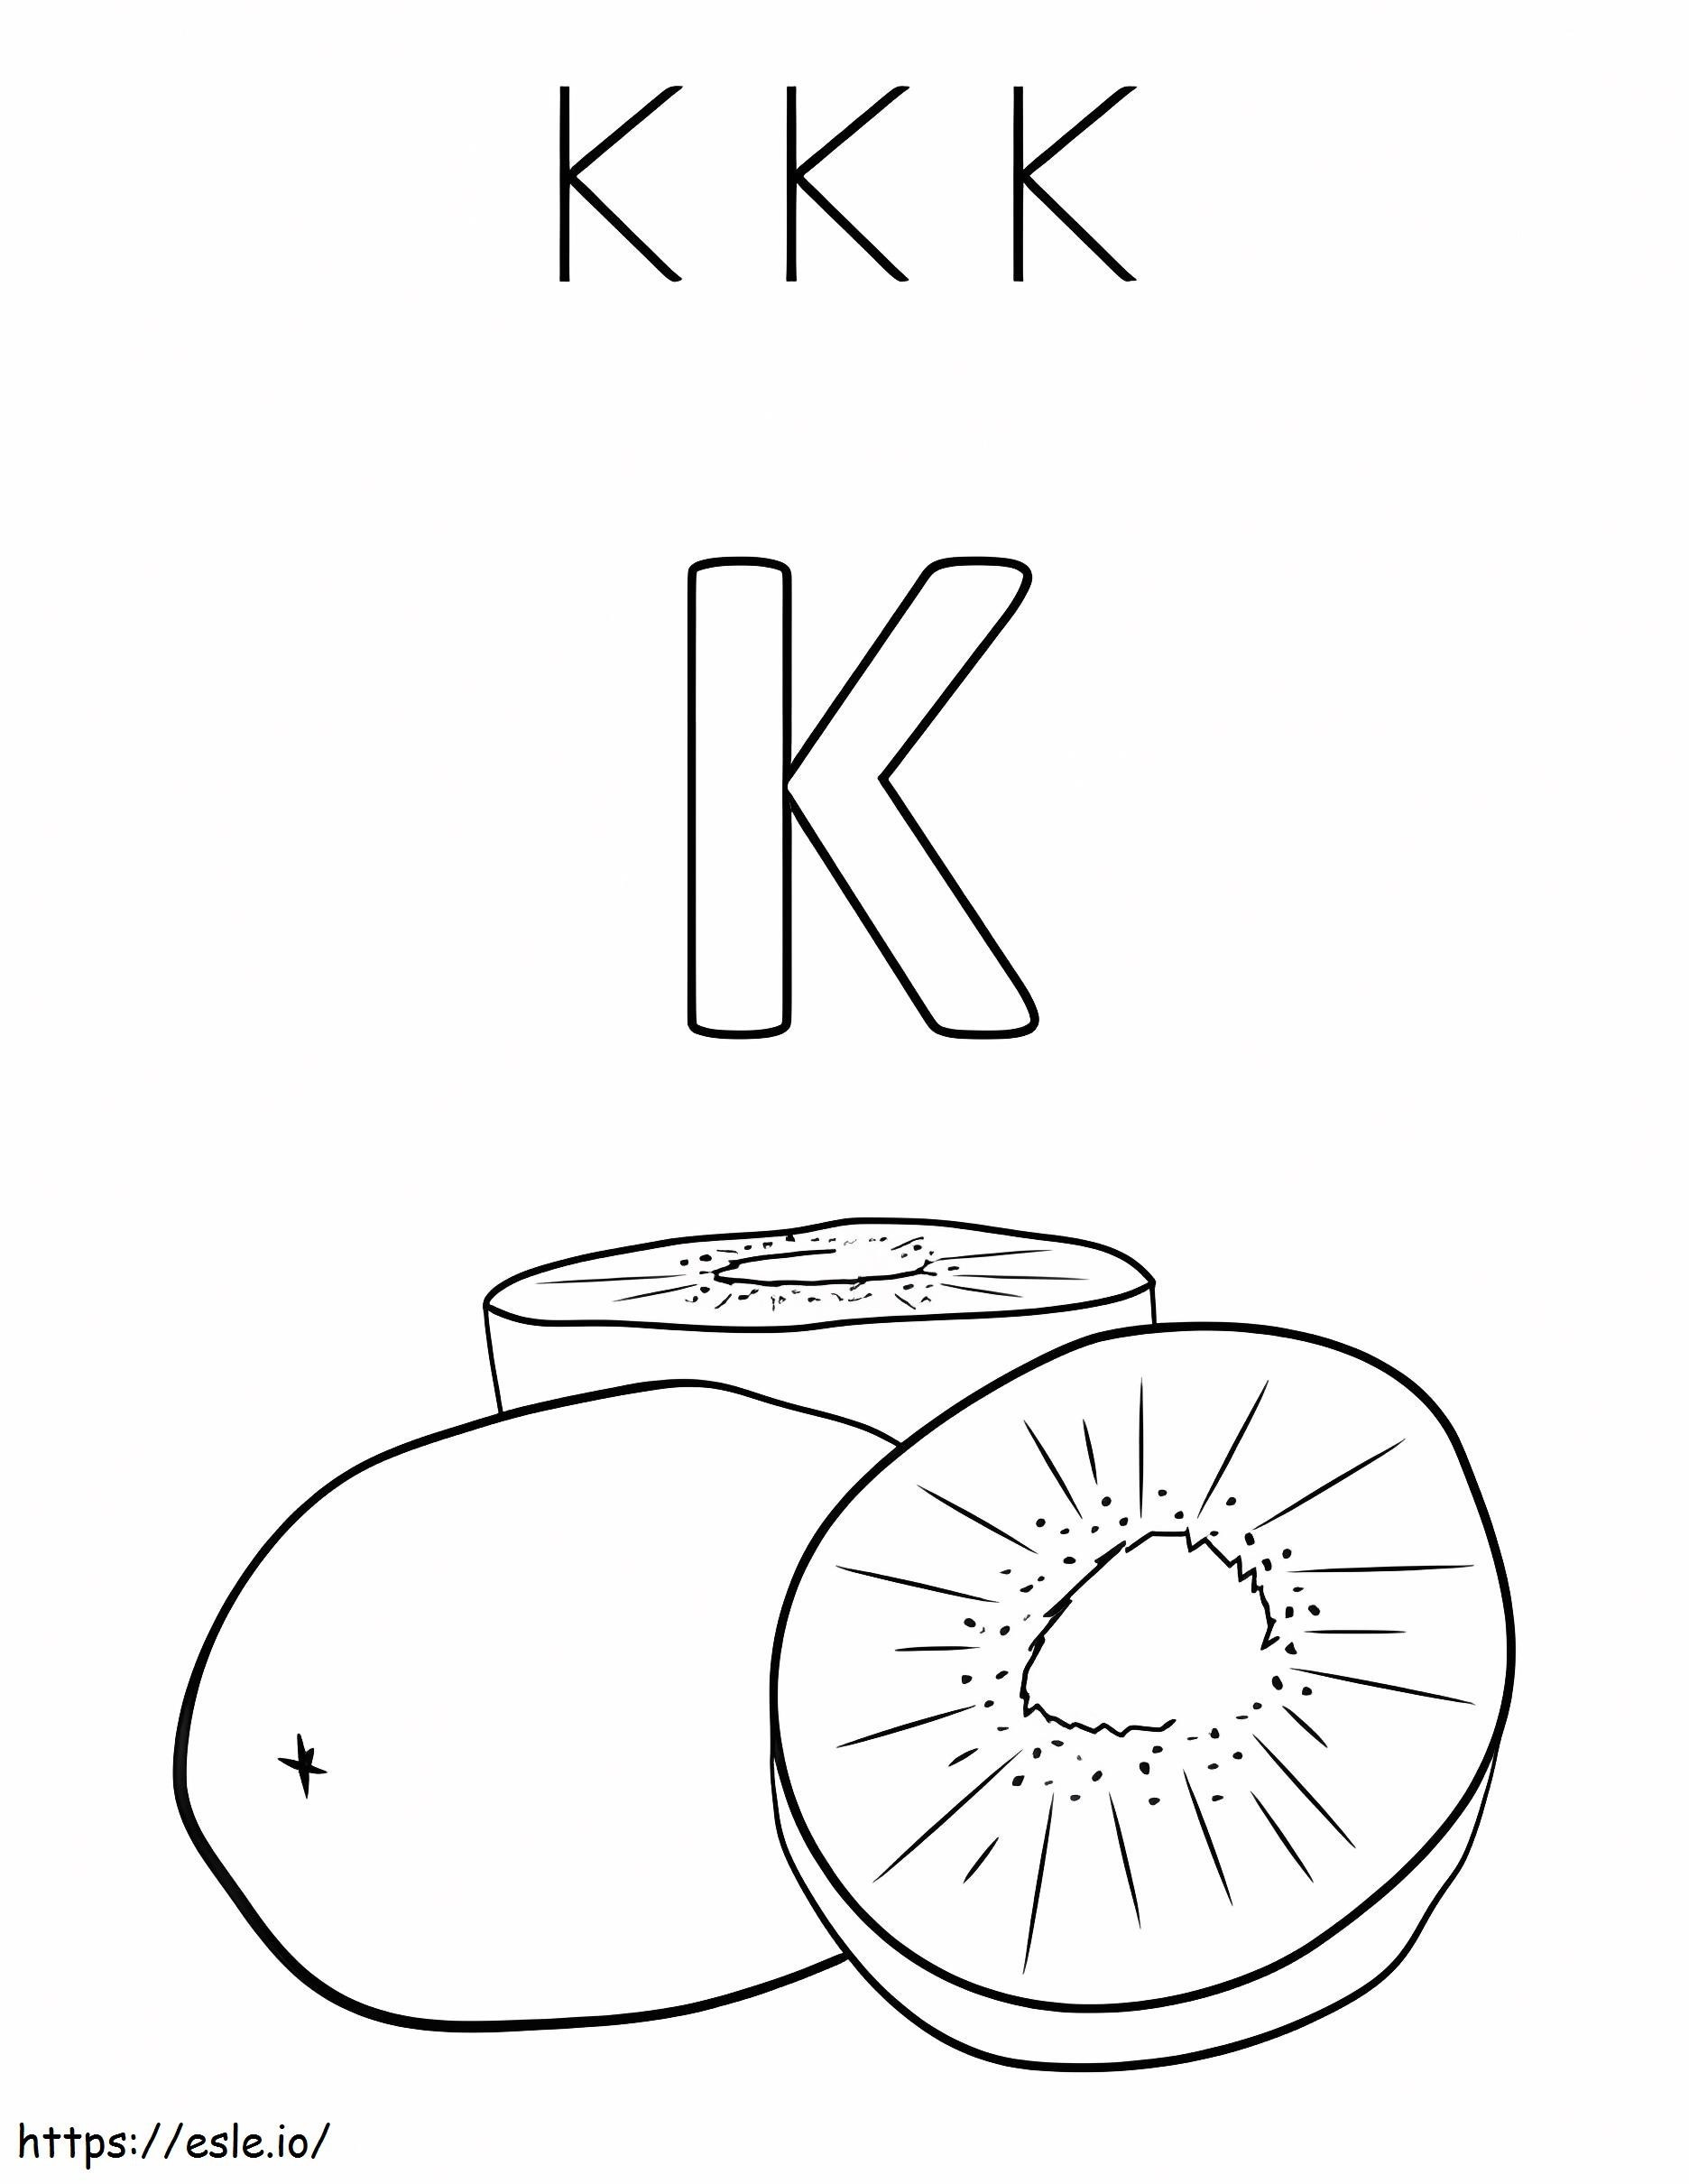 Grundbuchstabe K und Kiwi ausmalbilder